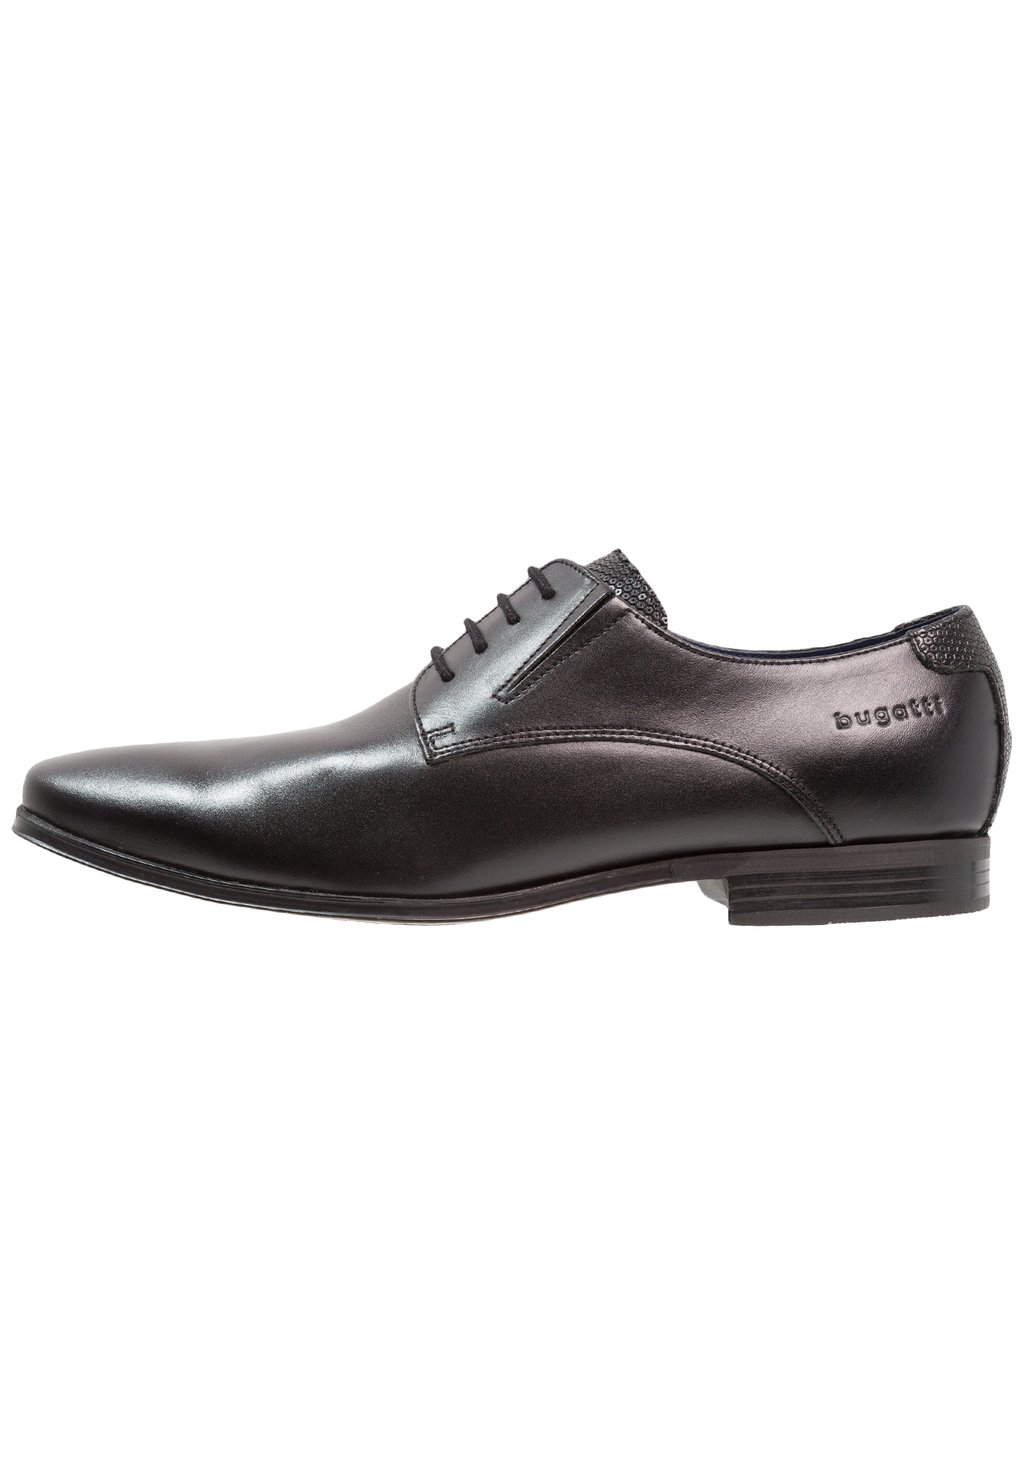 Деловые туфли на шнуровке bugatti, цвет black деловые туфли на шнуровке bugatti цвет black